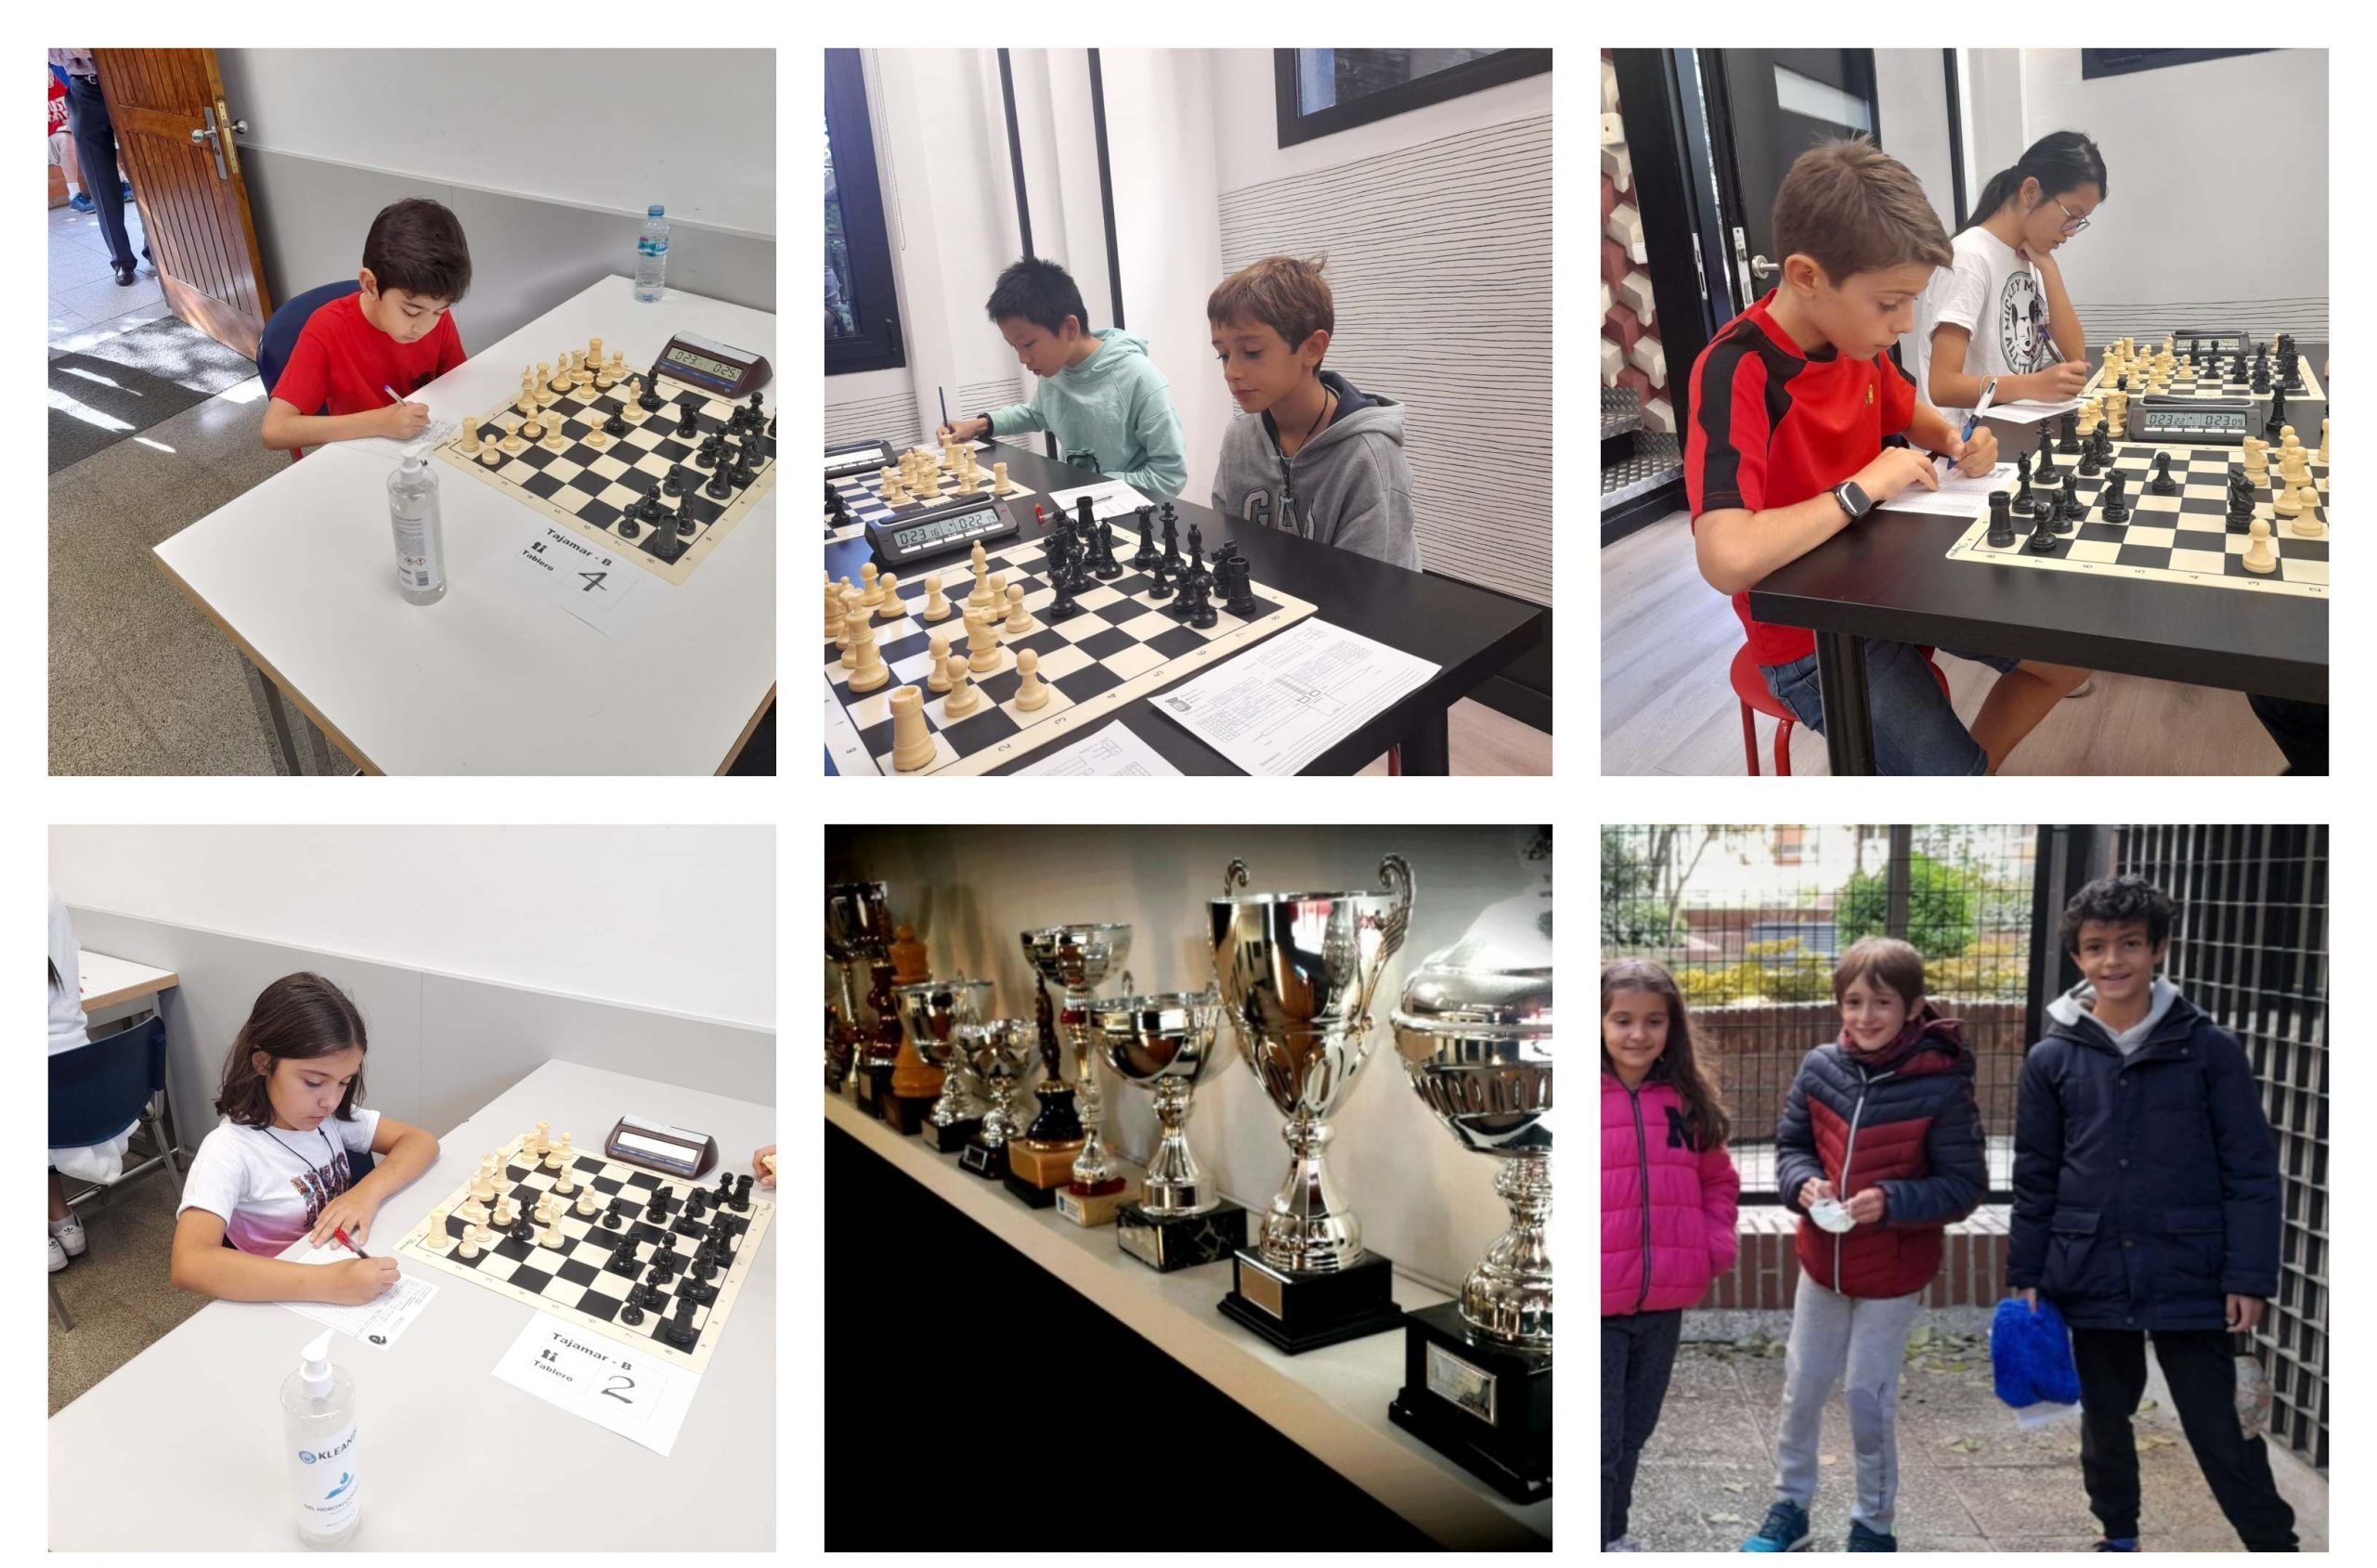 Campeones de ajedrez infantil, torneo para categoría alevín. Escuela de ajedrez blanco y negro.